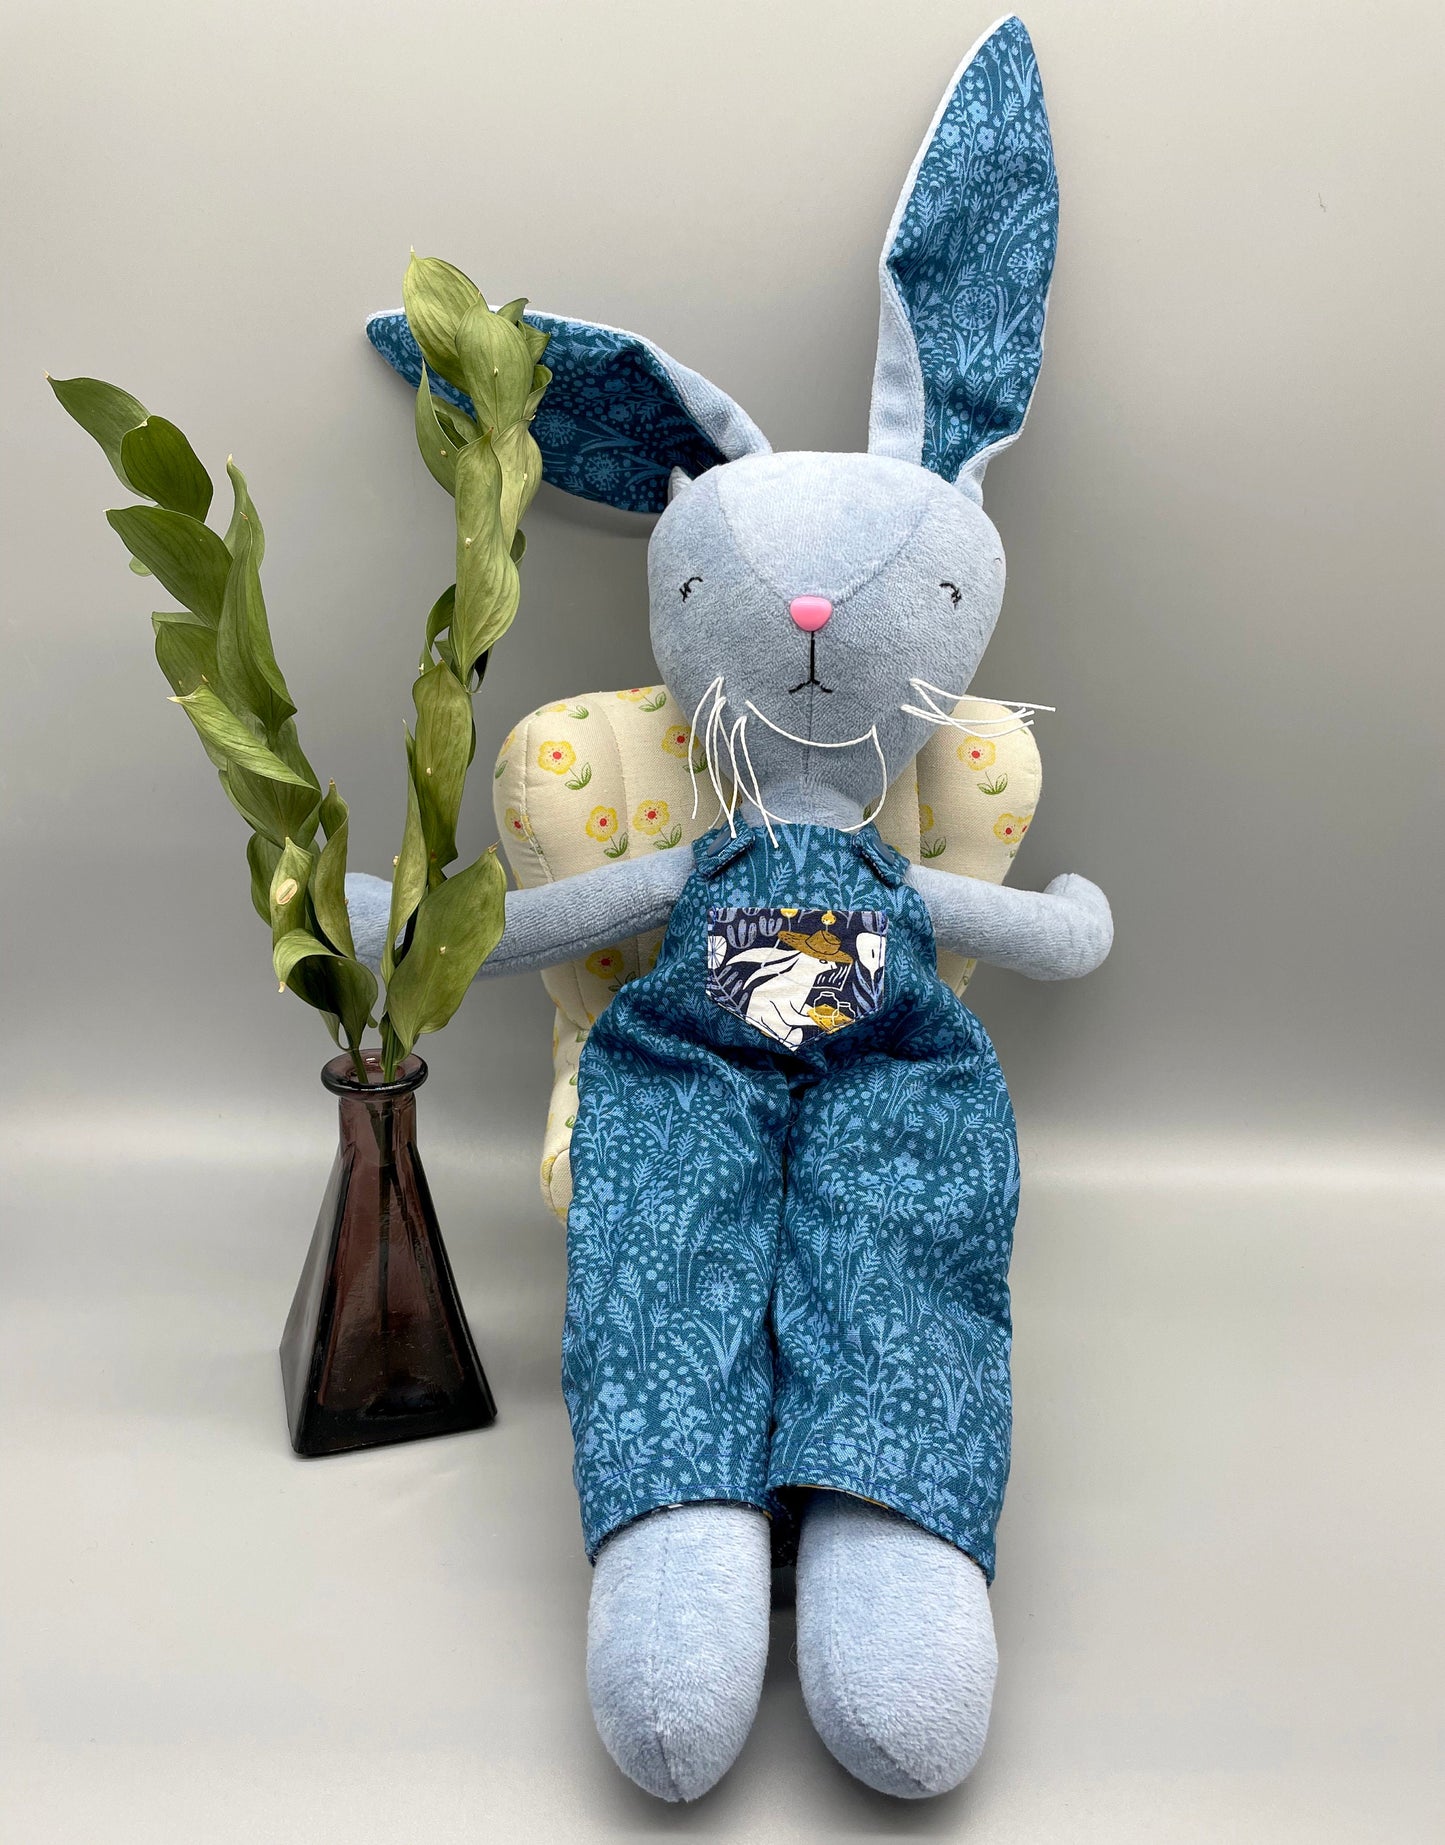 Reversible Handmade Easter Bunny, "DRAKE", Stuffed animal, boy easter basket, plush rabbits, easter gifts, gift for kids, Easter Doll, blue